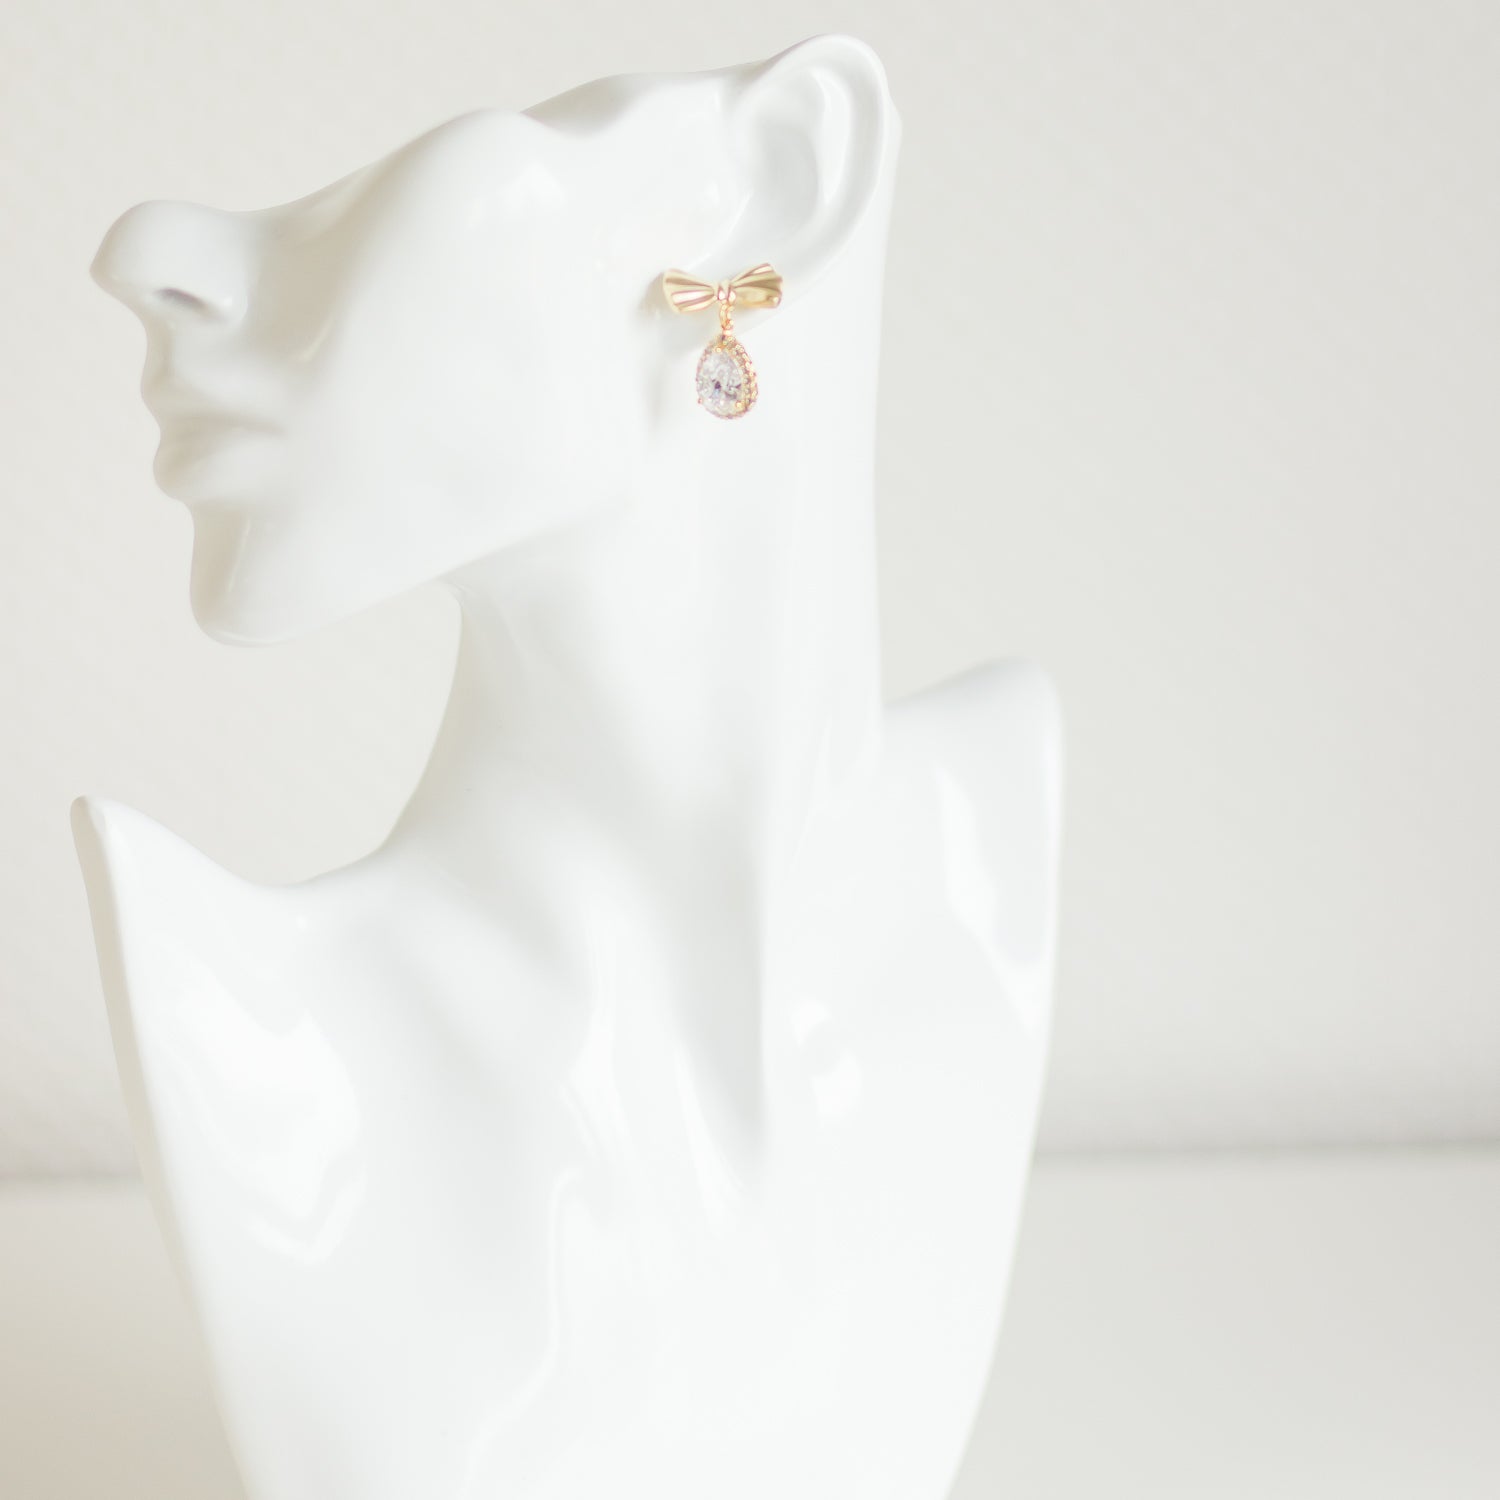 Stud earrings. Golden earrings. Bow earrings. Stylish earrings. Cubic zirconia earrings. Crystal jewelry. Handmade accessories